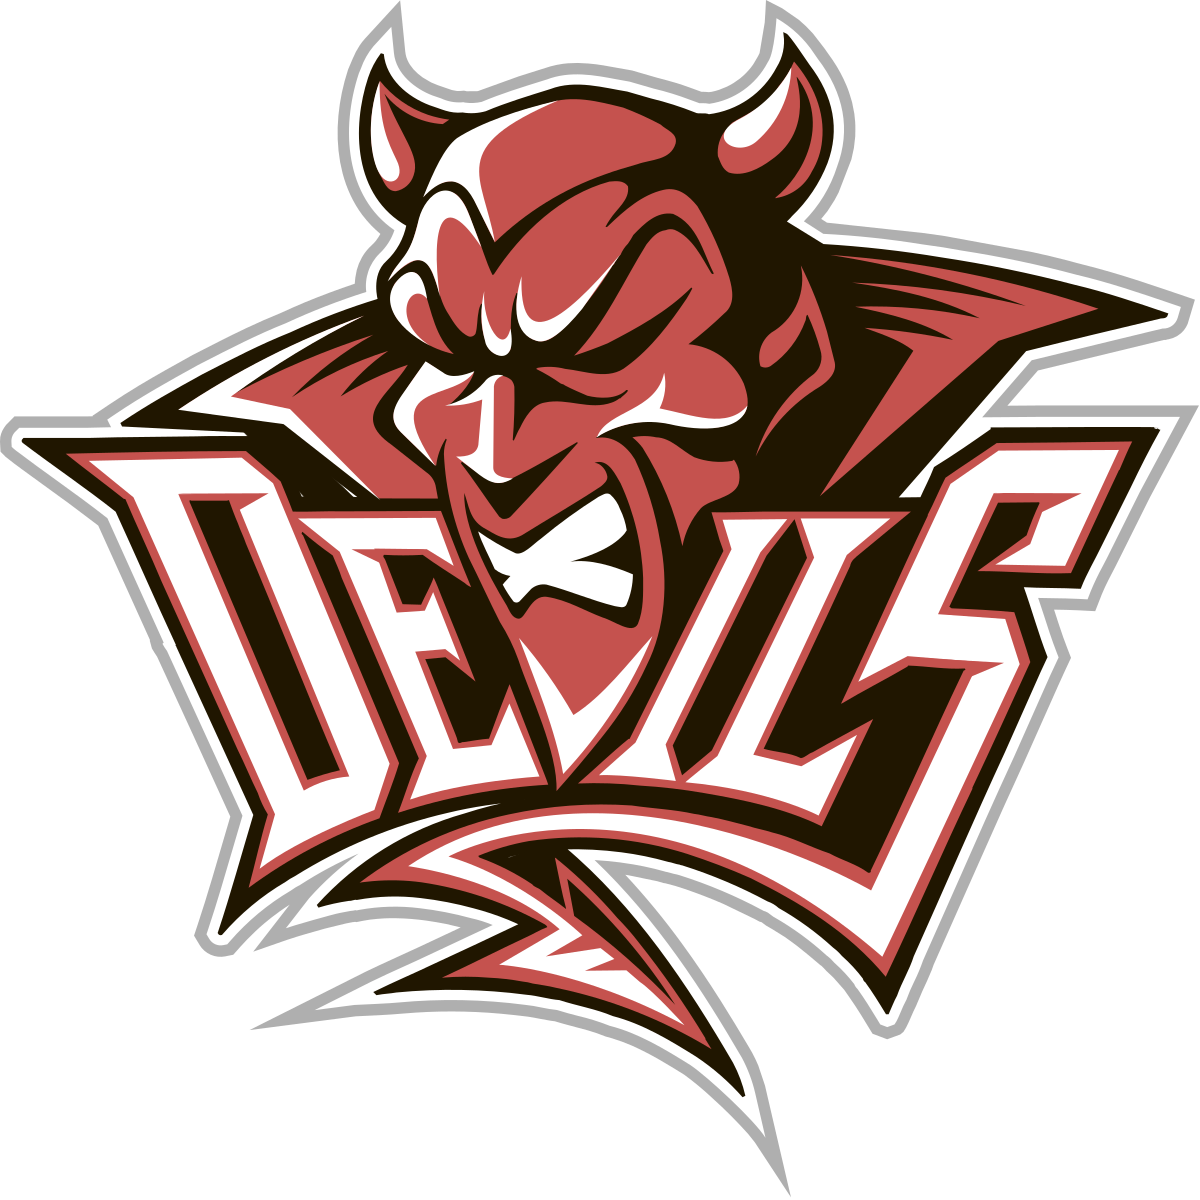 Devil logo, Vector Logo of Devil brand free download (eps, ai, png, cdr)  formats